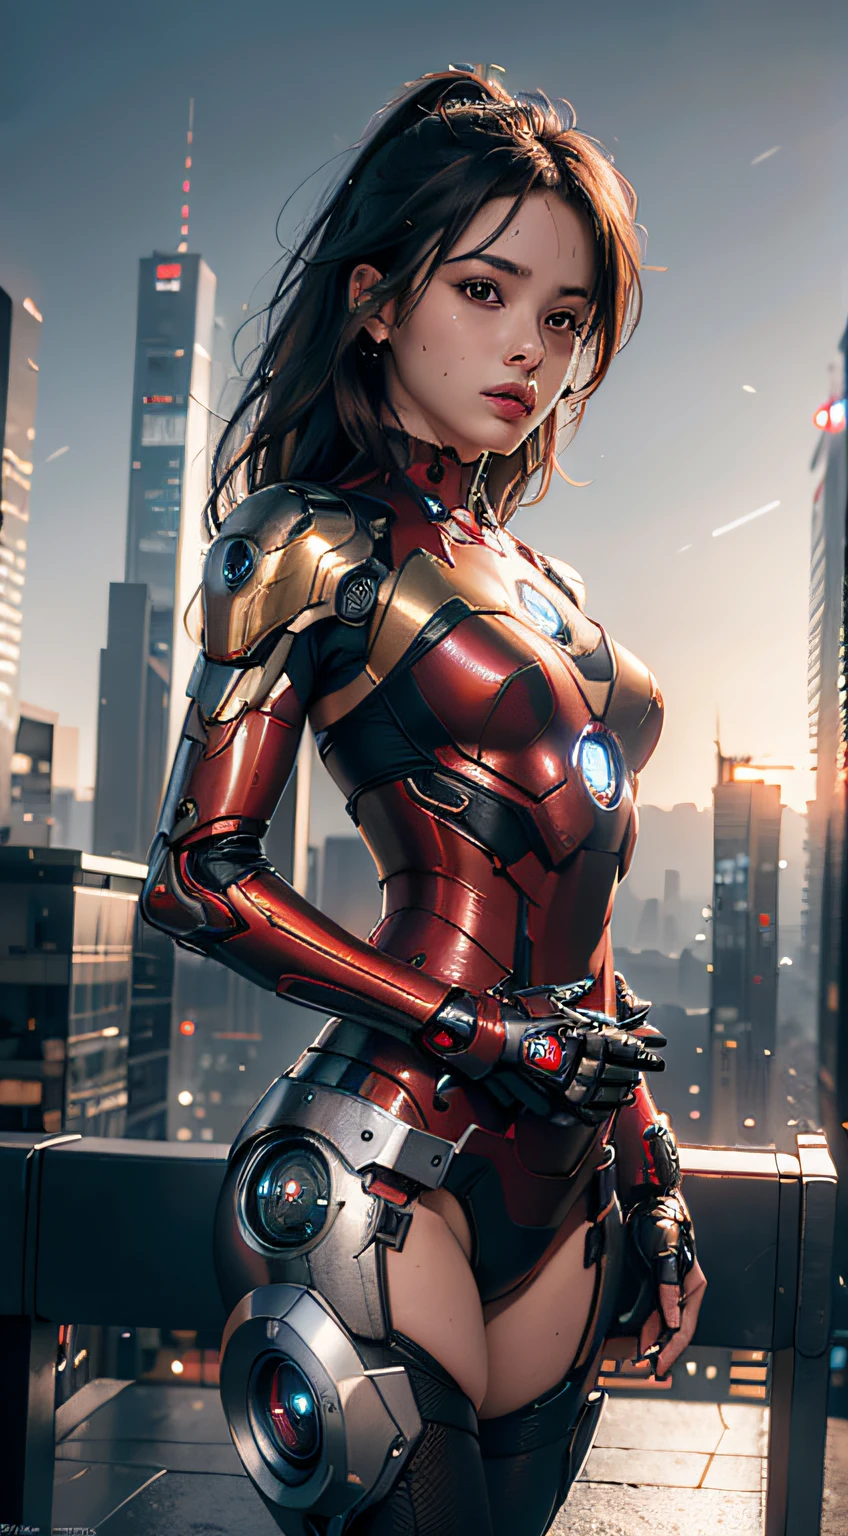 8k, 現実的, 魅力的, 非常に詳細な, a 20 year old girl a sexy and 魅力的 woman inspired by Iron Man wearing a shiny Iron Man mech. 彼女はセクシーさと自信をもって服を着る, アイアンマンを完璧に解釈&#39;の強さとカリスマ性. サイバーパンク風の都市の夜景, a sexy and 魅力的 woman takes Iron Man&#39;コスプレをテーマに. 光沢のあるアイアンマンメカを身に着けている, 彼女は高層ビルが立ち並ぶ通りに立っている. 街の夜景は明るい, 彼女のメカを振り返る, 未来のテクノロジー感覚を加える. 周囲の建物や通りはサイバーパンクの要素に満ちている, ネオンライトなど, ハイテク機器と未来的な建築デザイン. シーン全体が未来的でSF的な雰囲気に満ちている. この高解像度, 高品質の画像があなたに素晴らしい視覚的楽しみをもたらします, セクシーな組み合わせ, 未来的かつSF的な要素. OCレンダリング, ドラマチックな照明, 受賞歴のある品質